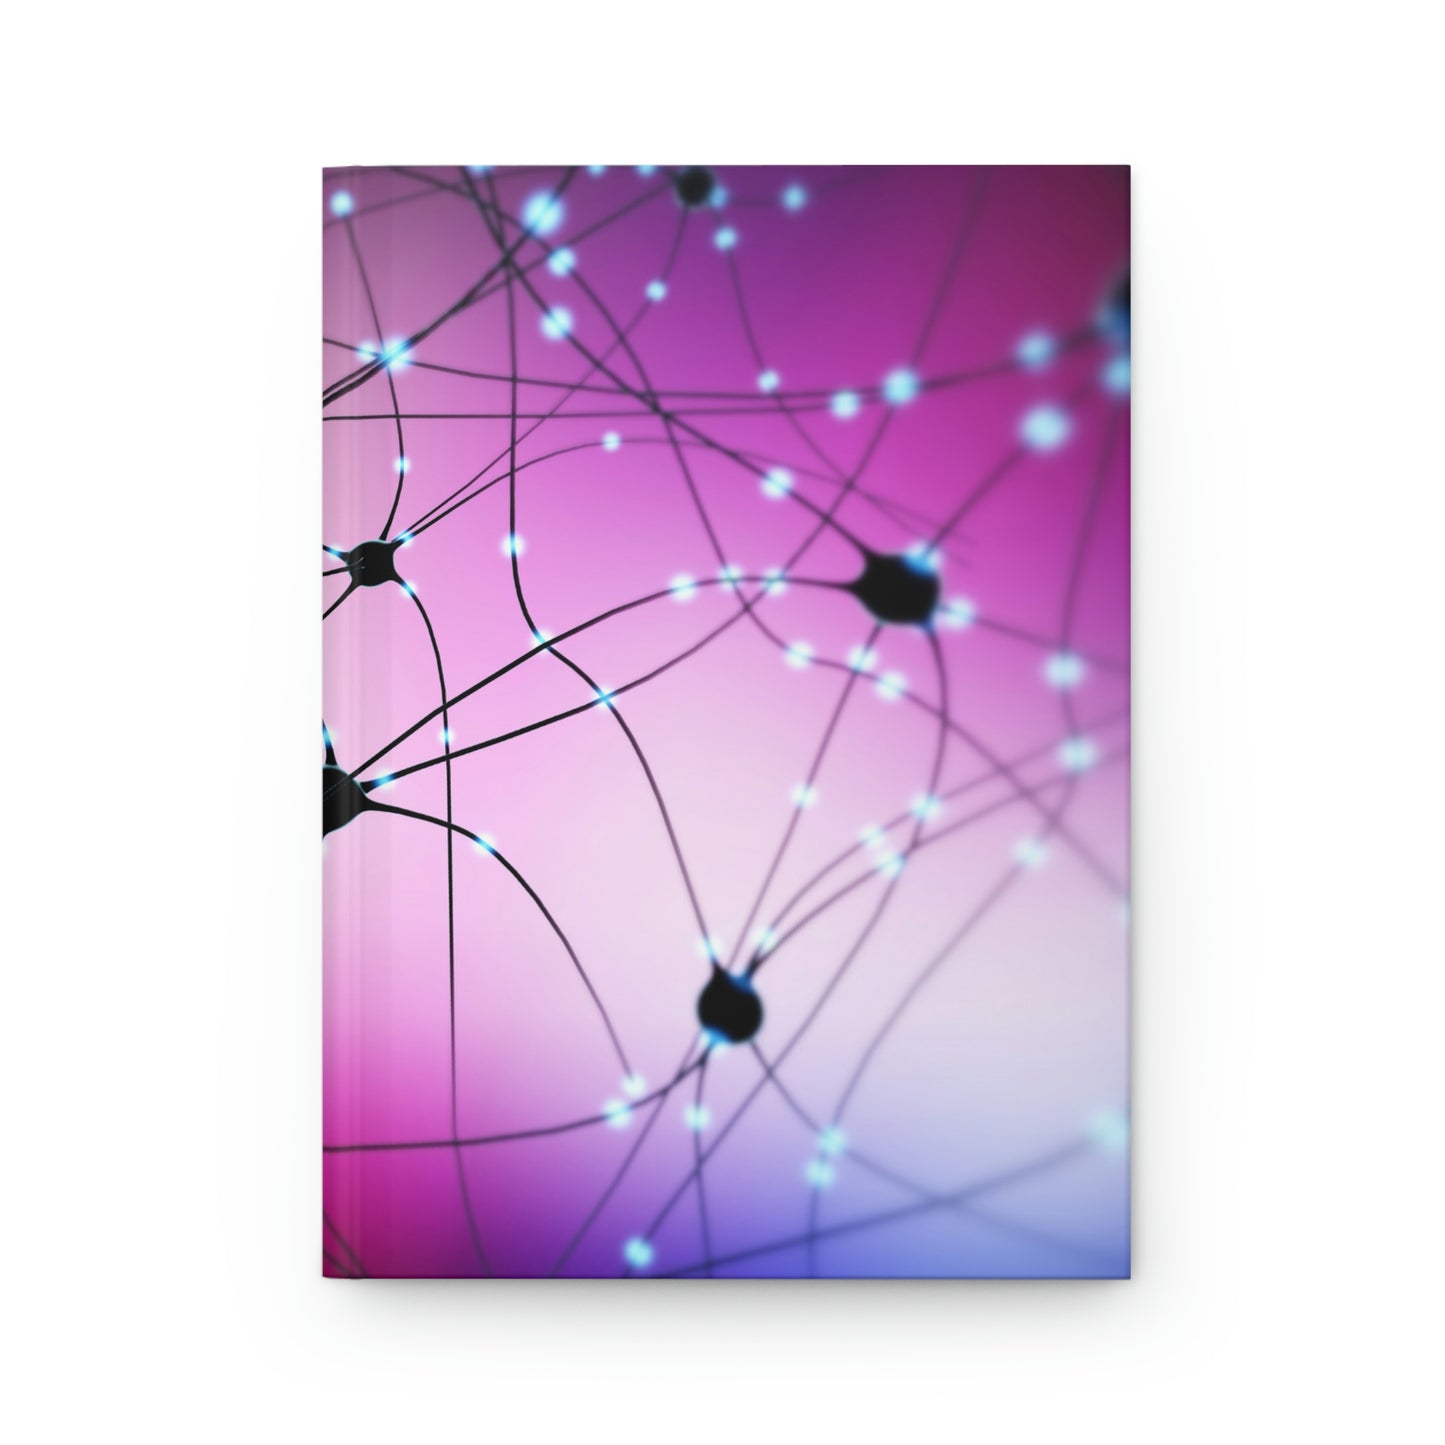 Neurons Notebook Book Hardcover Journal Matte